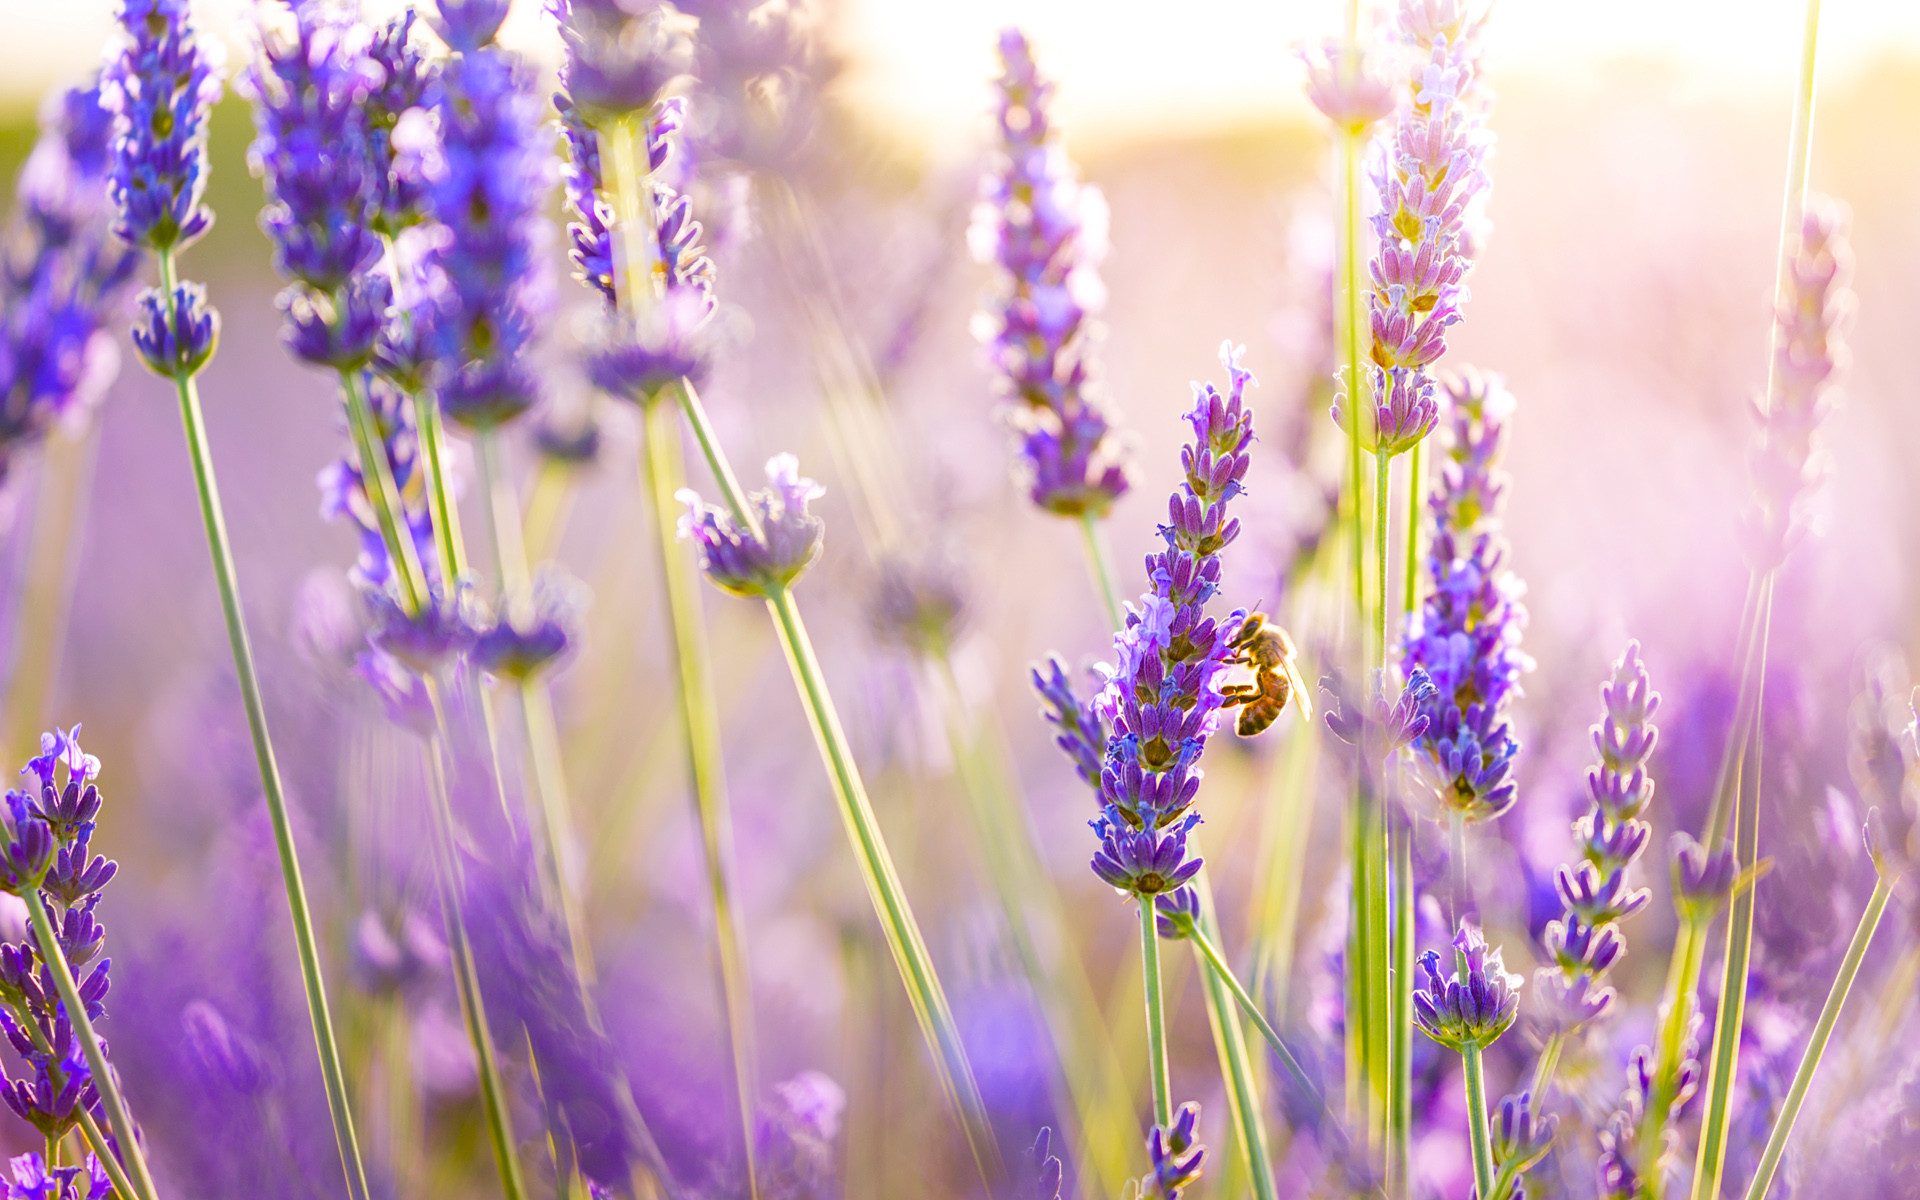 Một bức hình nền thật tuyệt vời với hoa lavender sẽ làm nổi bật màn hình điện thoại hay máy tính của bạn. Hãy cùng nhau chiêm ngưỡng những hình ảnh đầy màu sắc và thanh thoát này nhé.